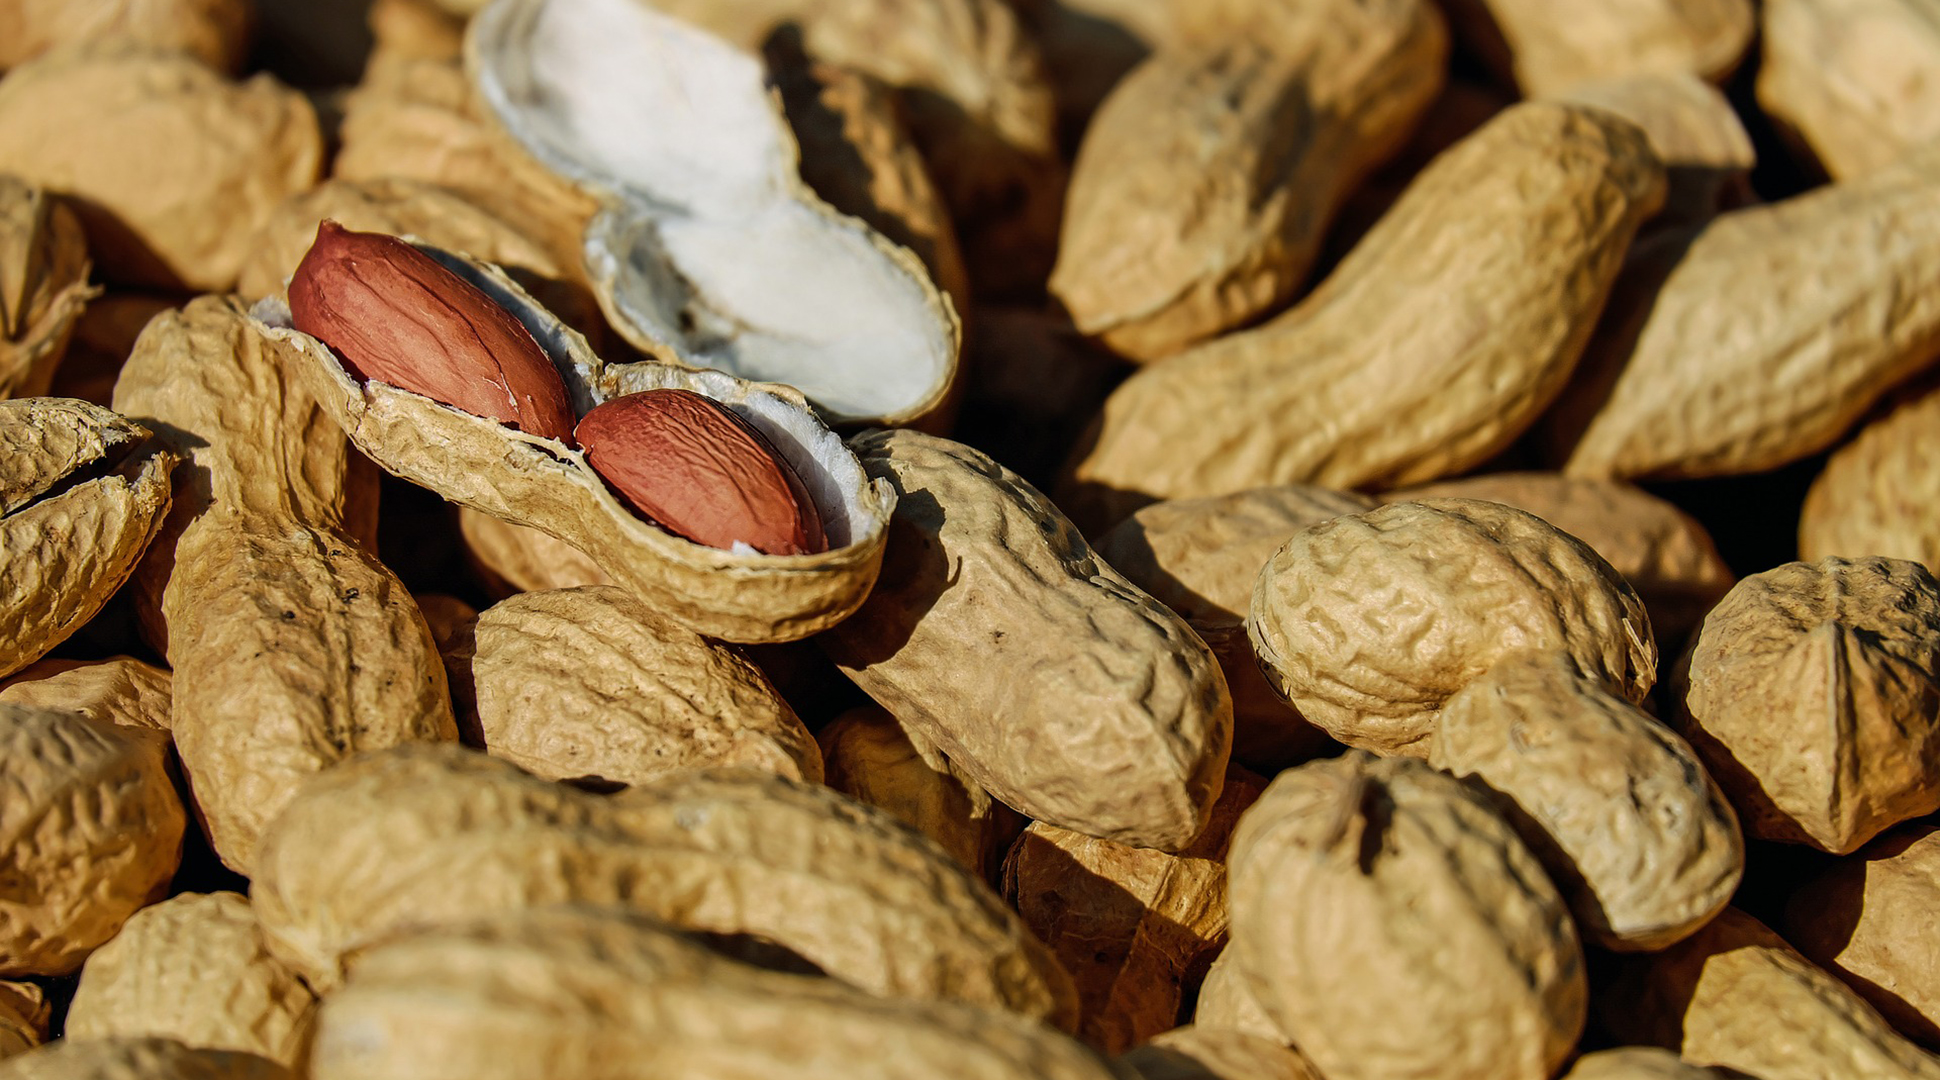 Peanut allergy update